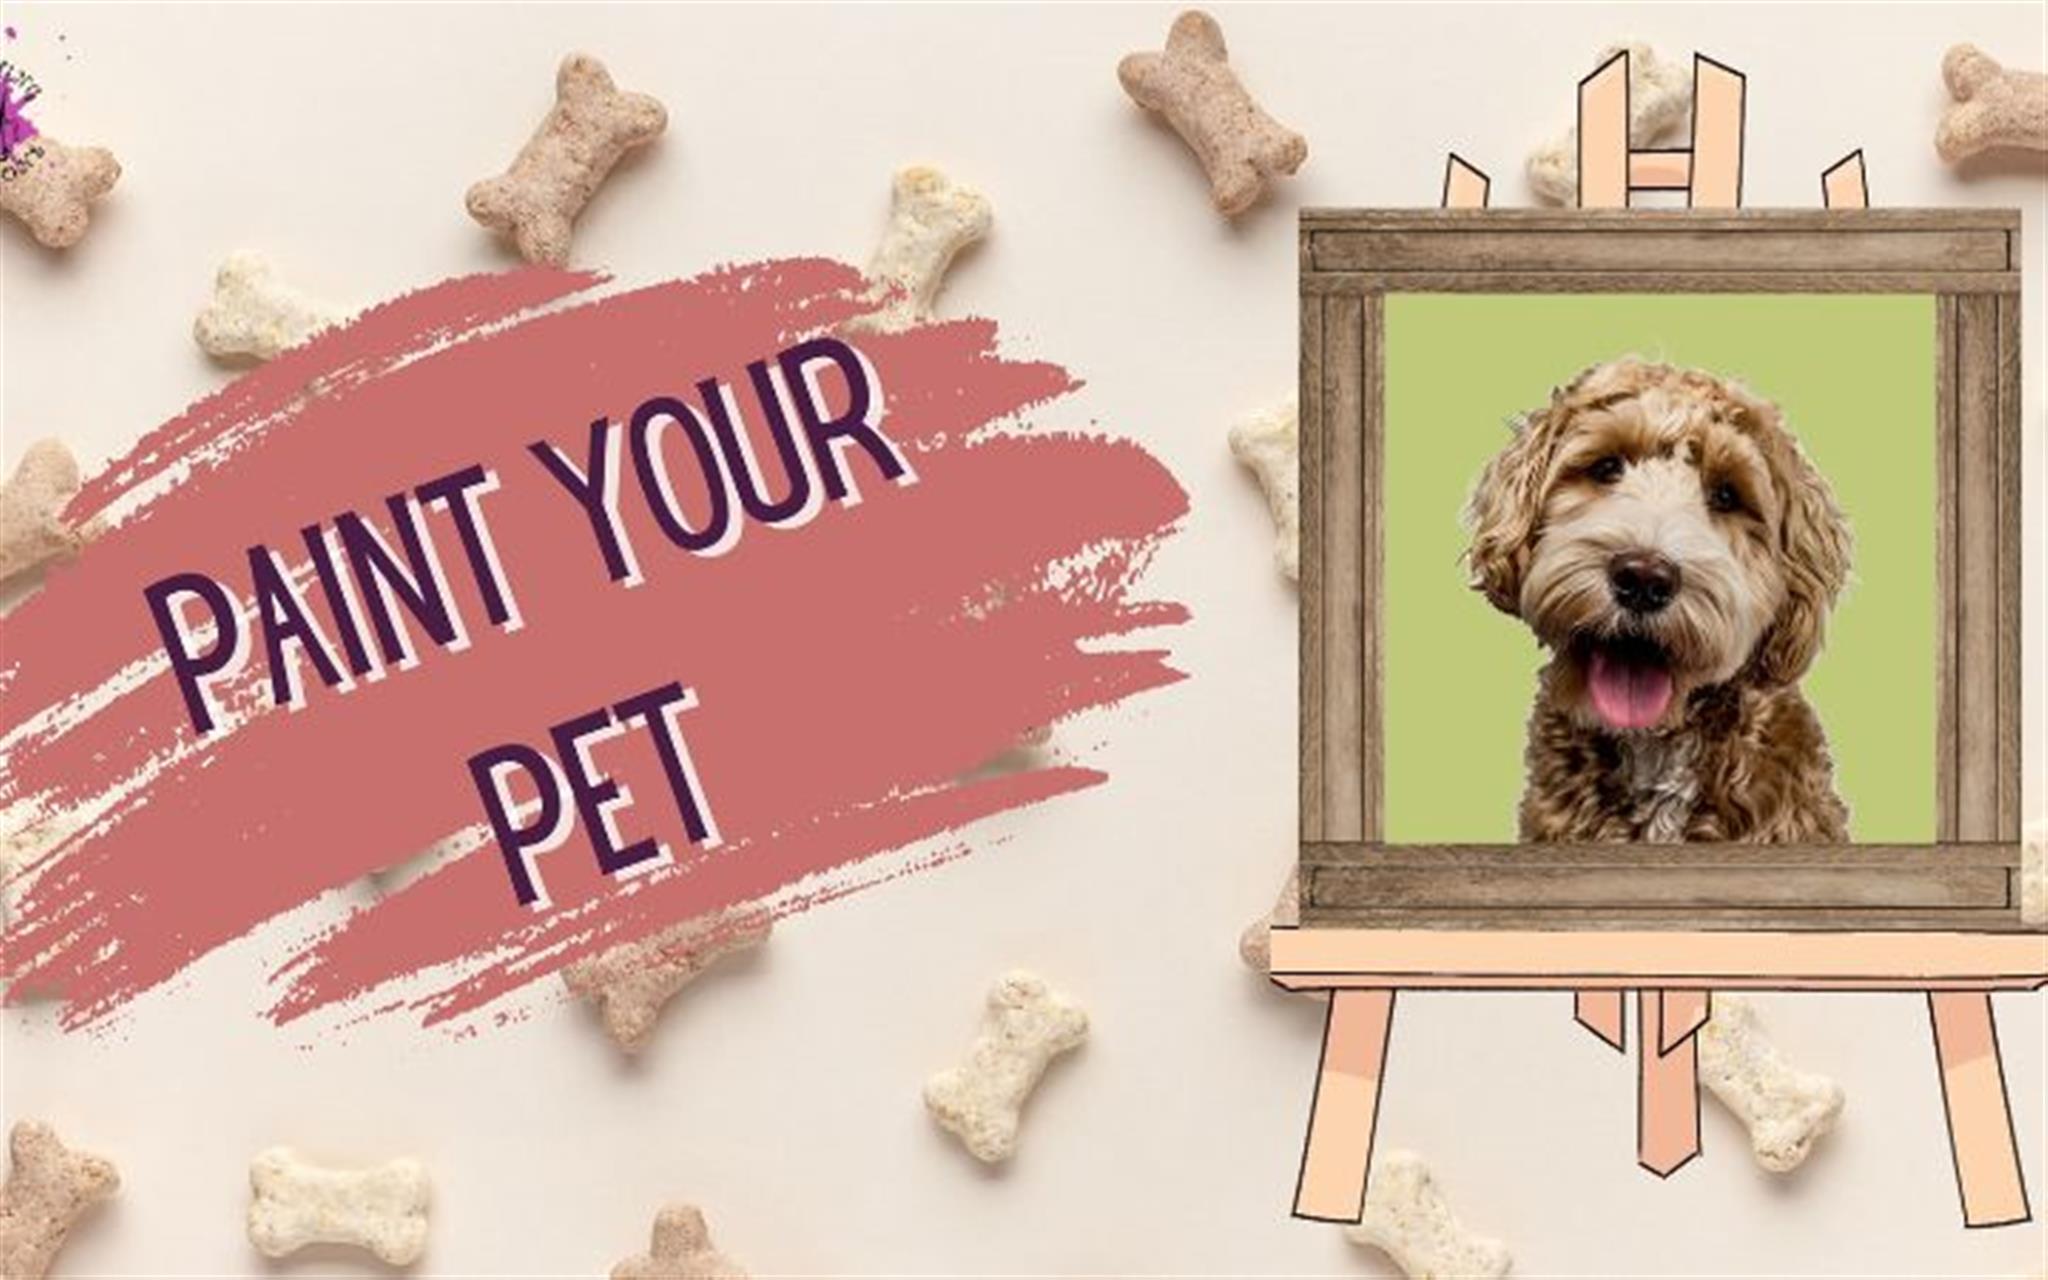 Paint Your Pet image